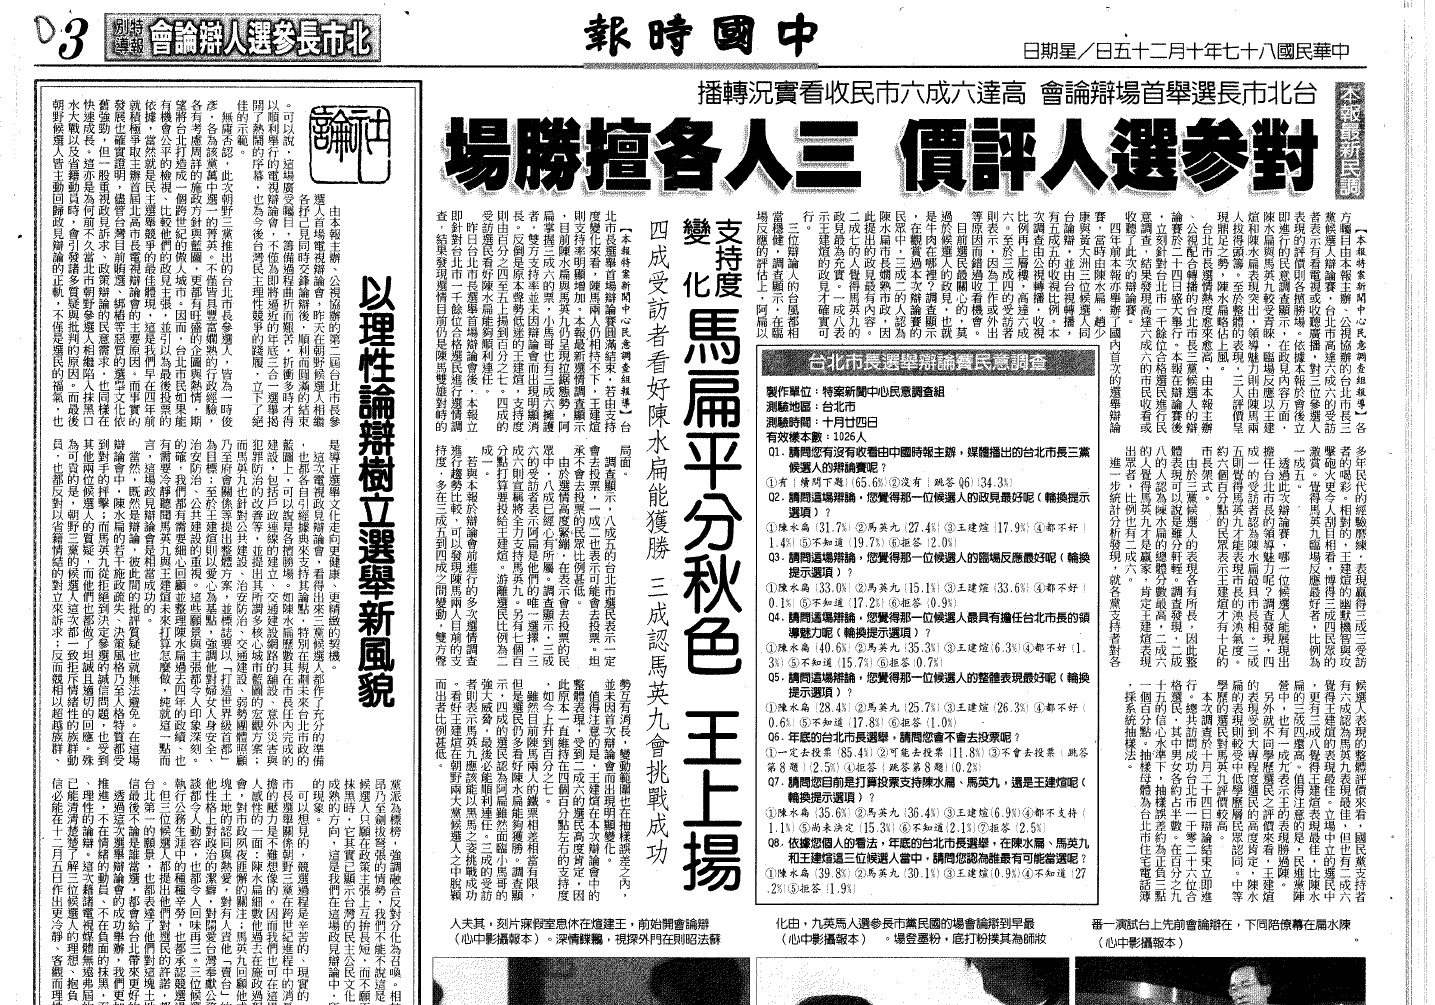 由1998年中國時報報導臺北市長辯論看現今媒體亂象